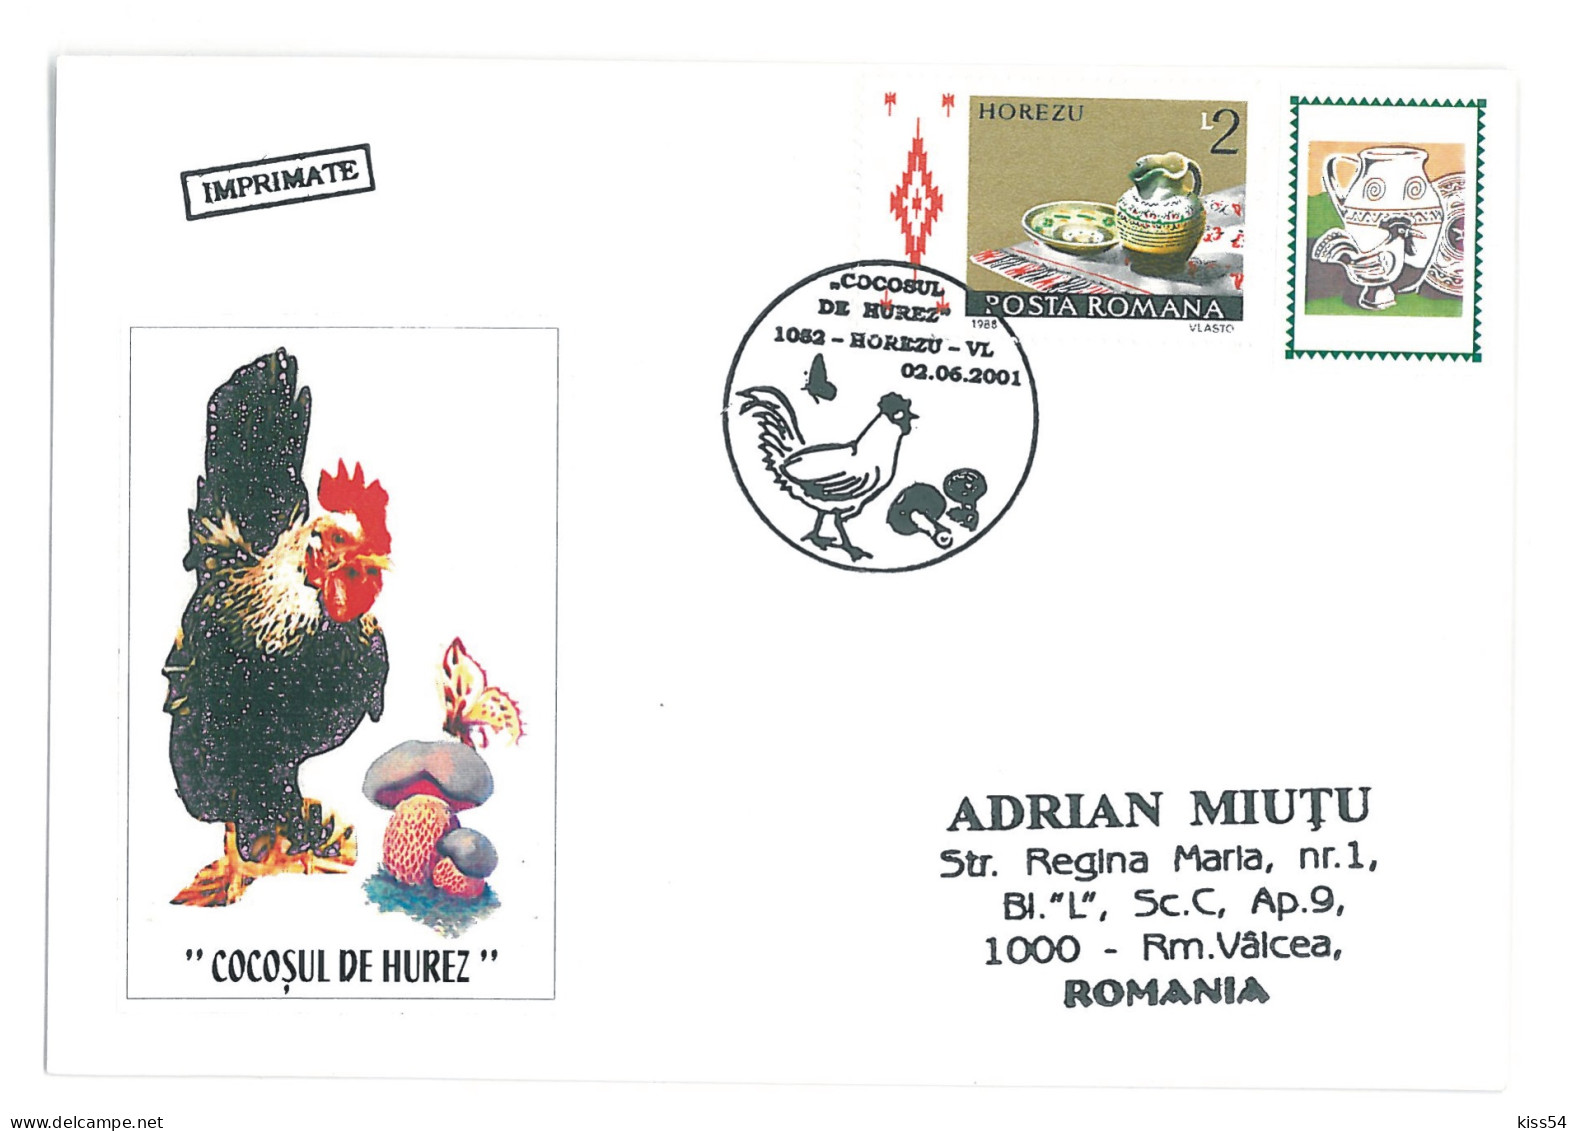 COV 51 - 1572 COCK, Bird, Romania - Cover - Used - 2001 - Gallinaceans & Pheasants